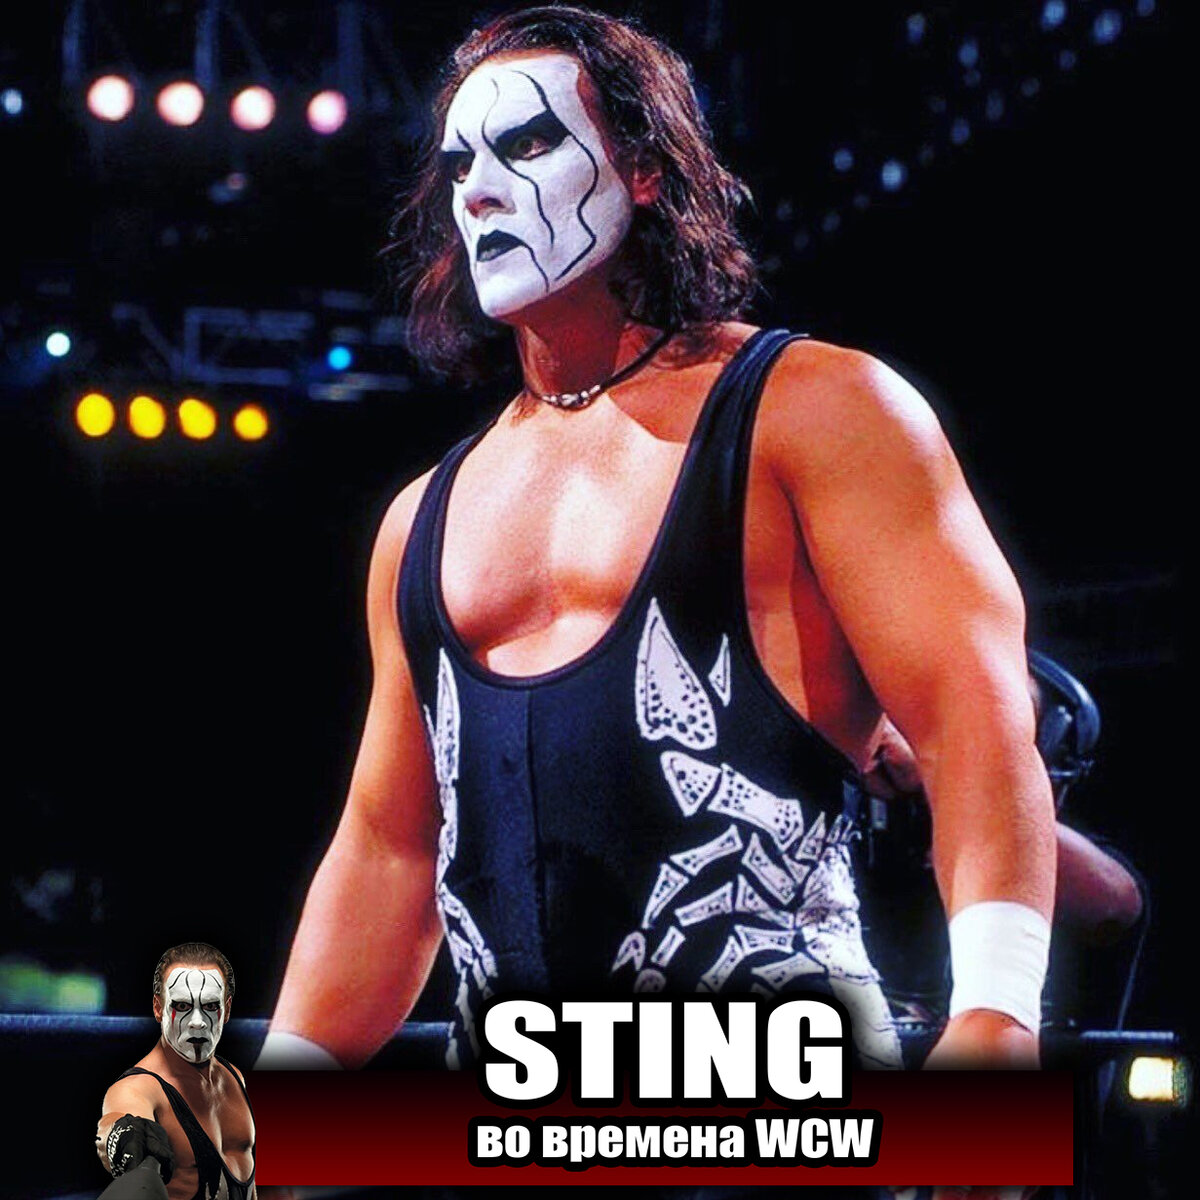 Стинг — легенда, легенда с большой буквы Л!, Карьеру он сделал не в WWE, а в ныне почившей федерации WCW.